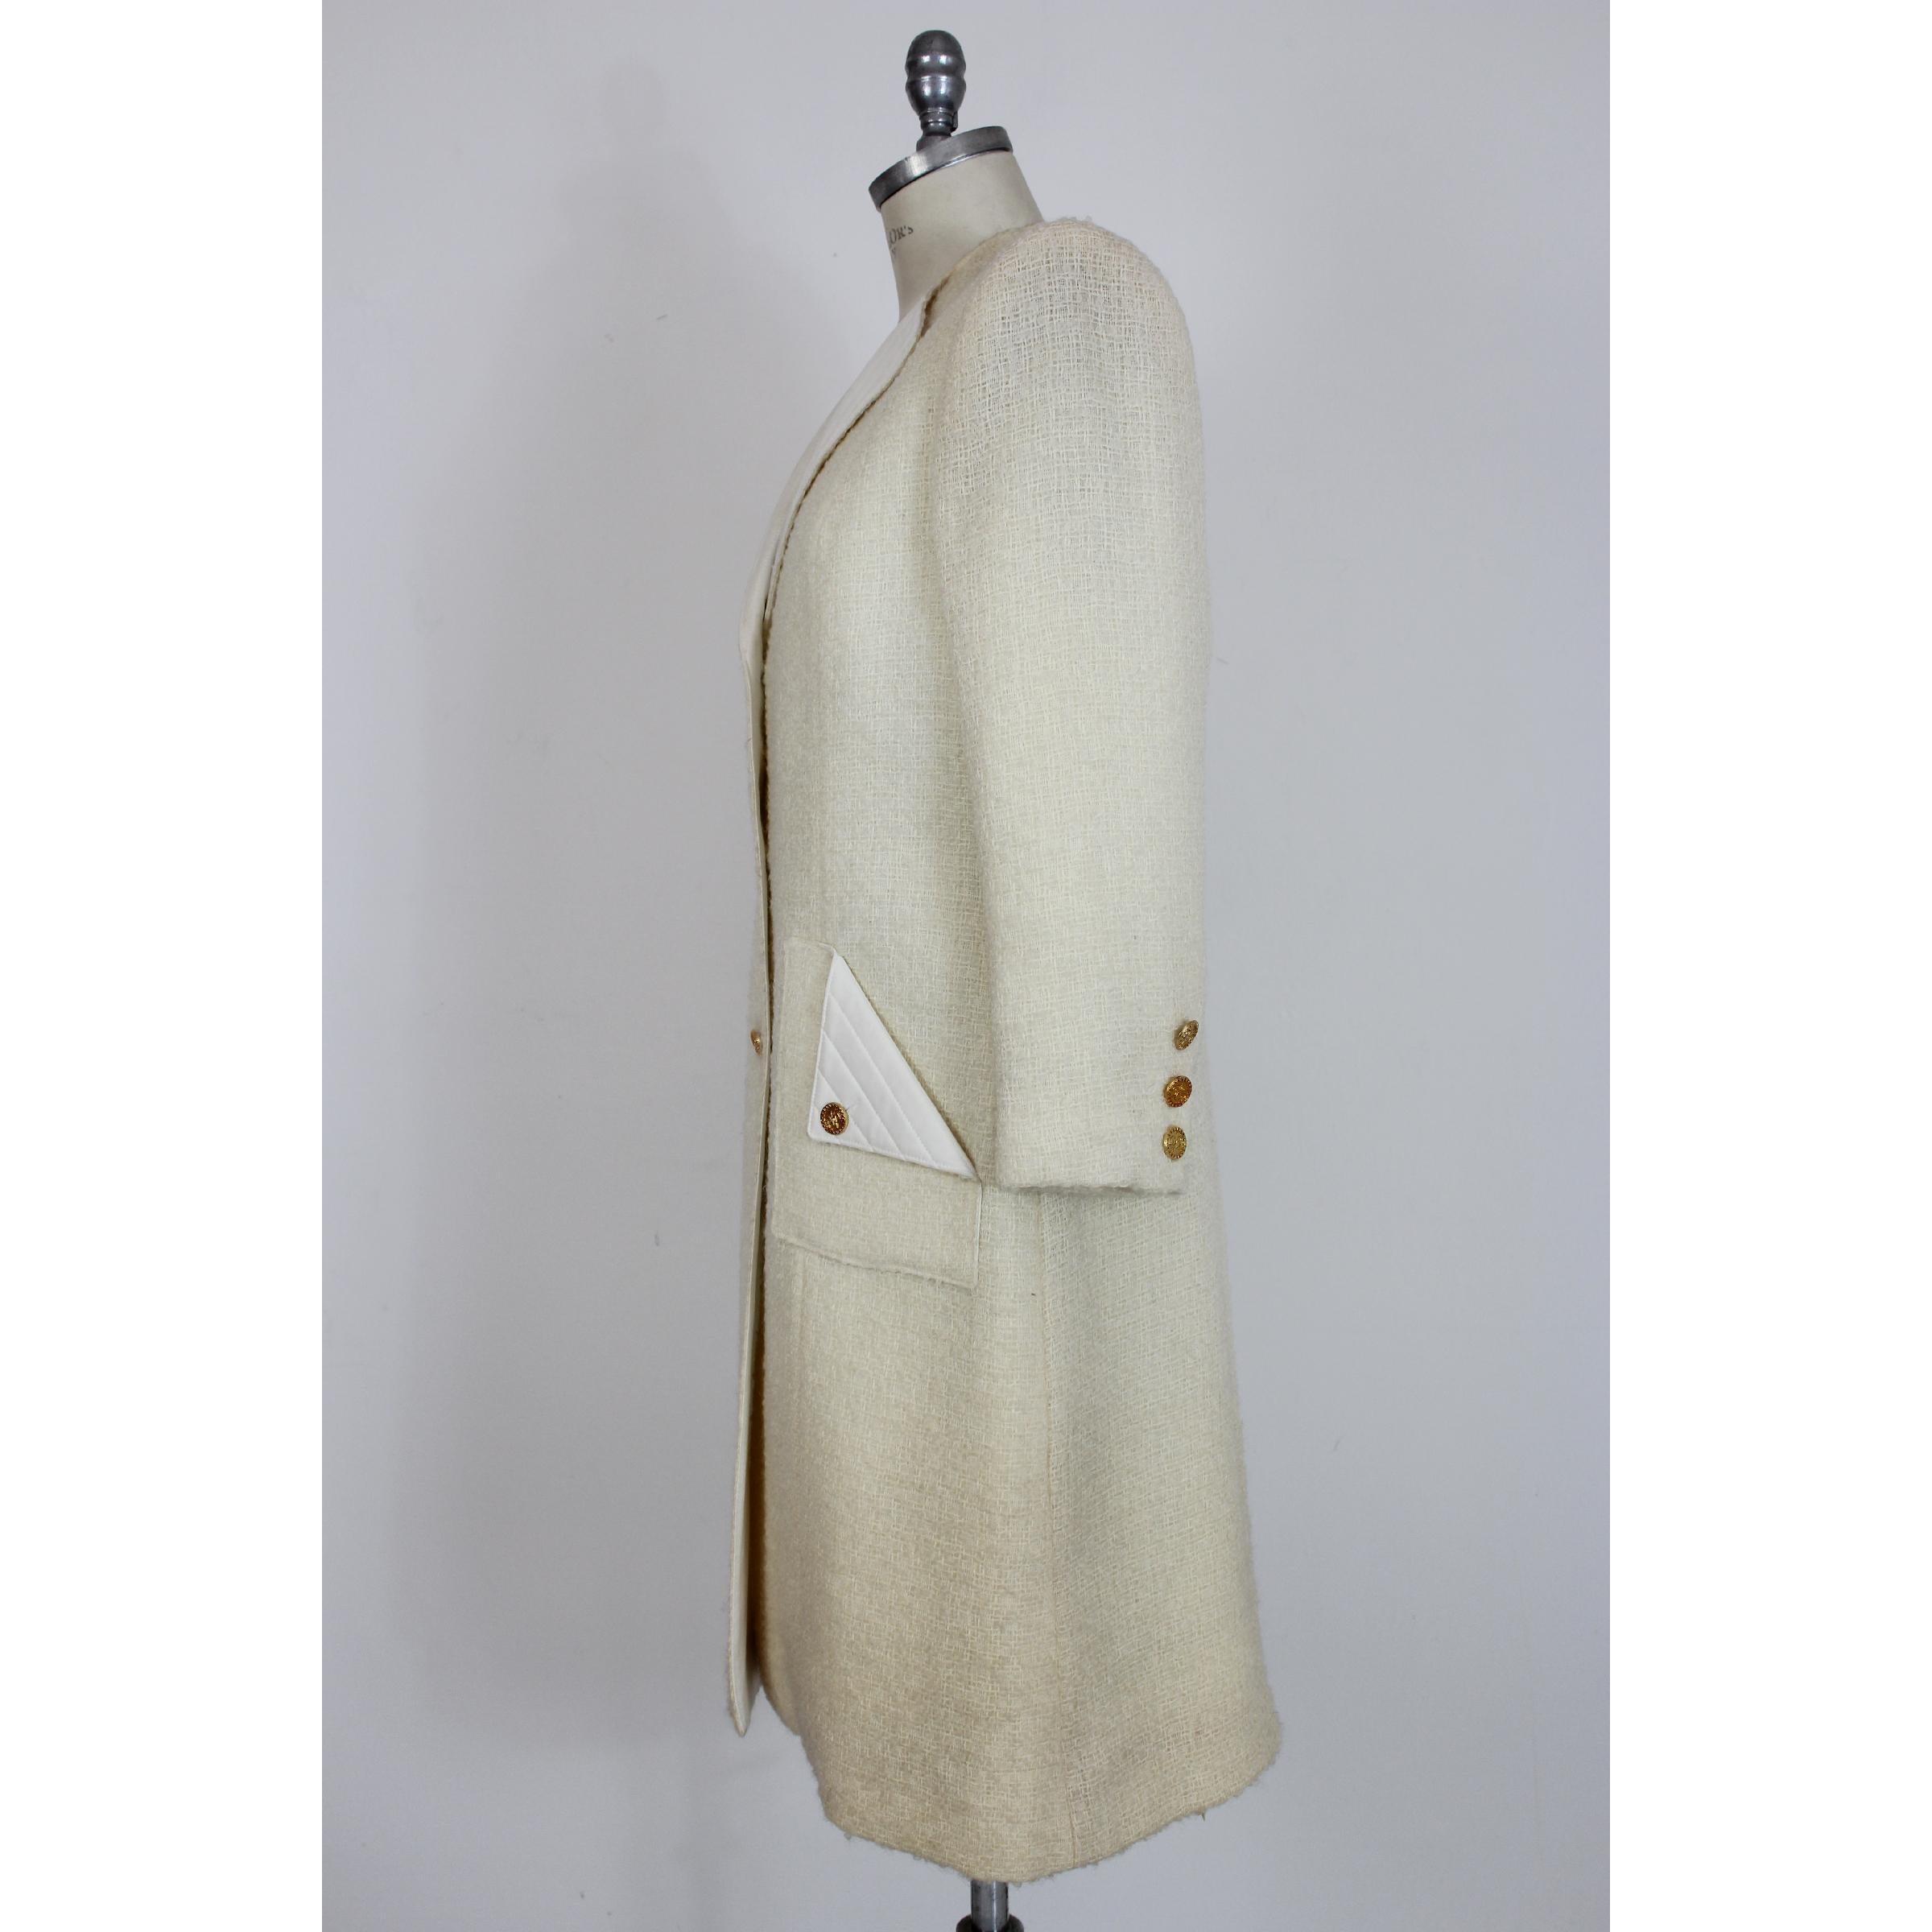 Manteau femme vintage des années 80 Paula Klein, modèle long, blanc, 100% pure laine avec col et poches en matelasse. Fermeture par boutons dorés, intérieur doublé. Fabriqué en France. Très bon état vintage, avec quelques petites taches qui ne